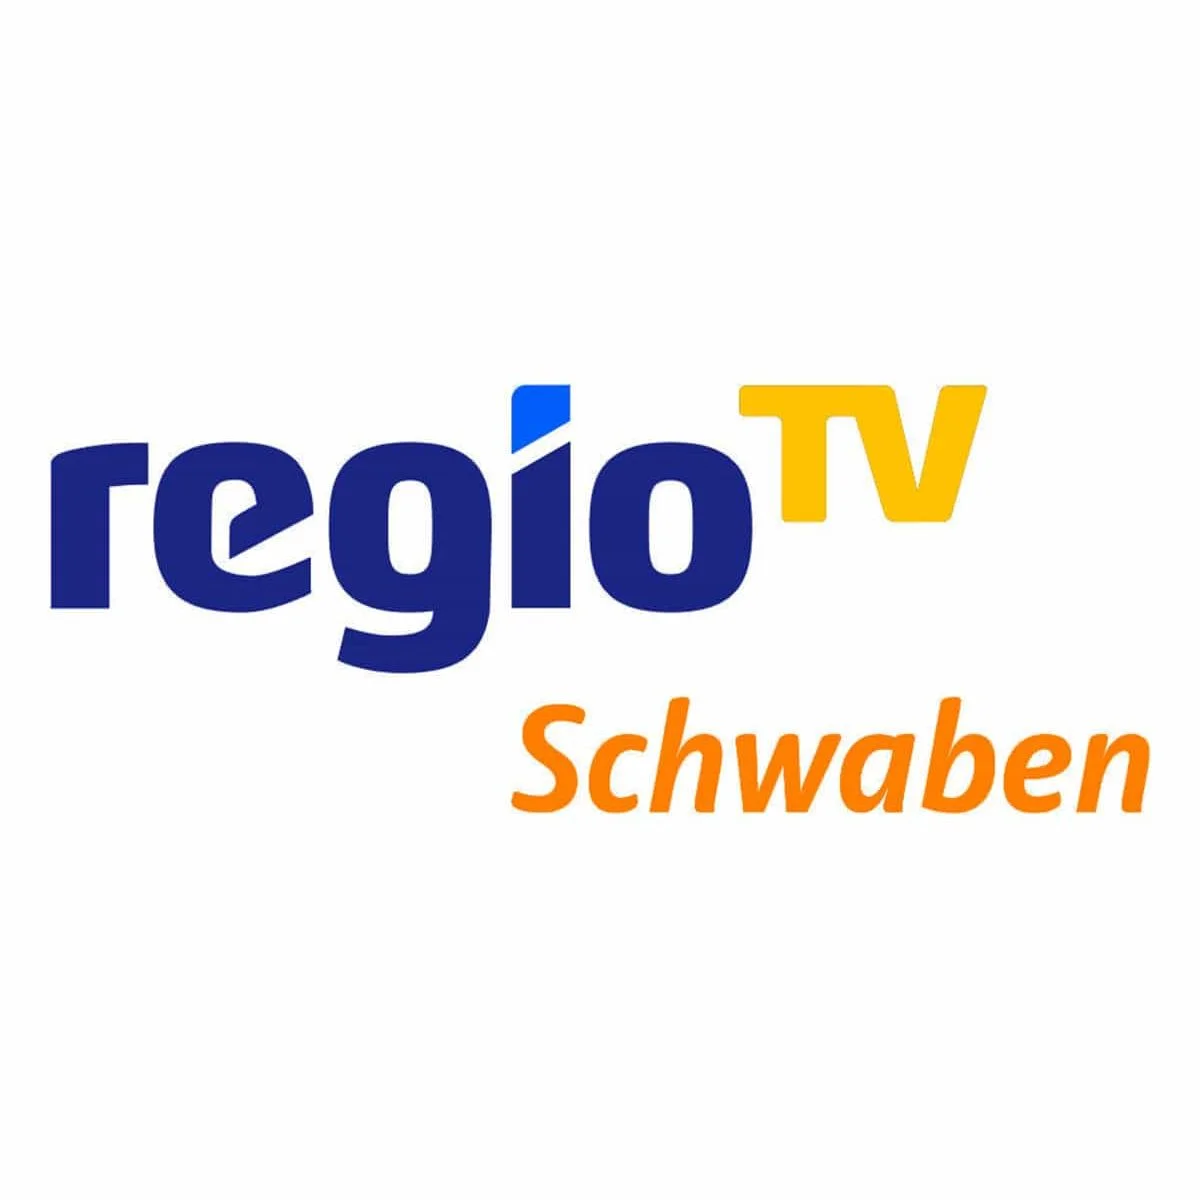 Regio TV Schwaben